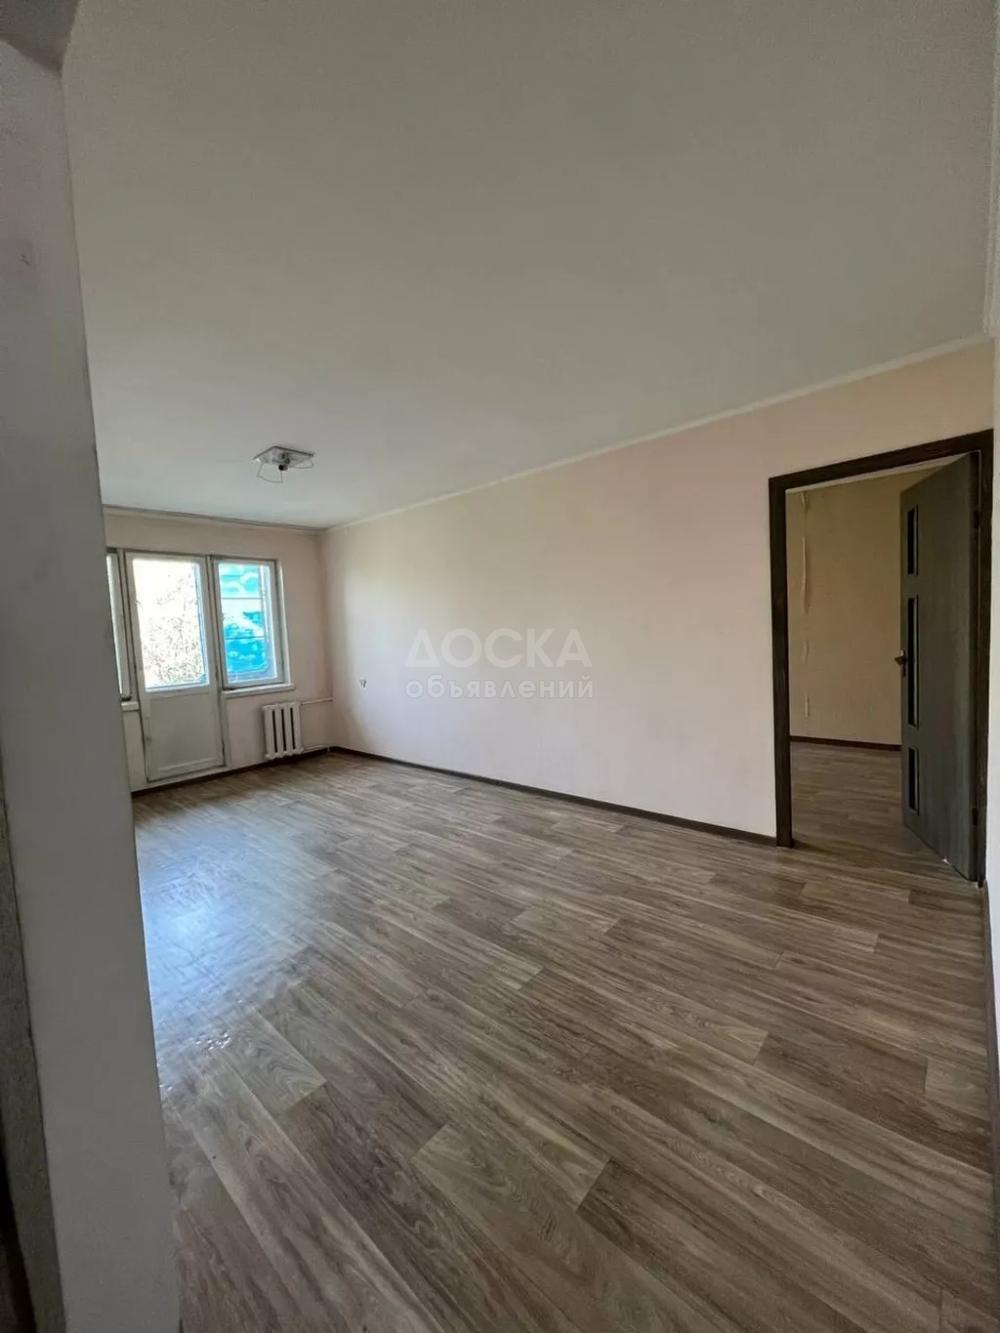 Продаю 2-комнатную квартиру, 46кв. м., этаж - 5/5, Боконбаева/Ибраимова 51000$.